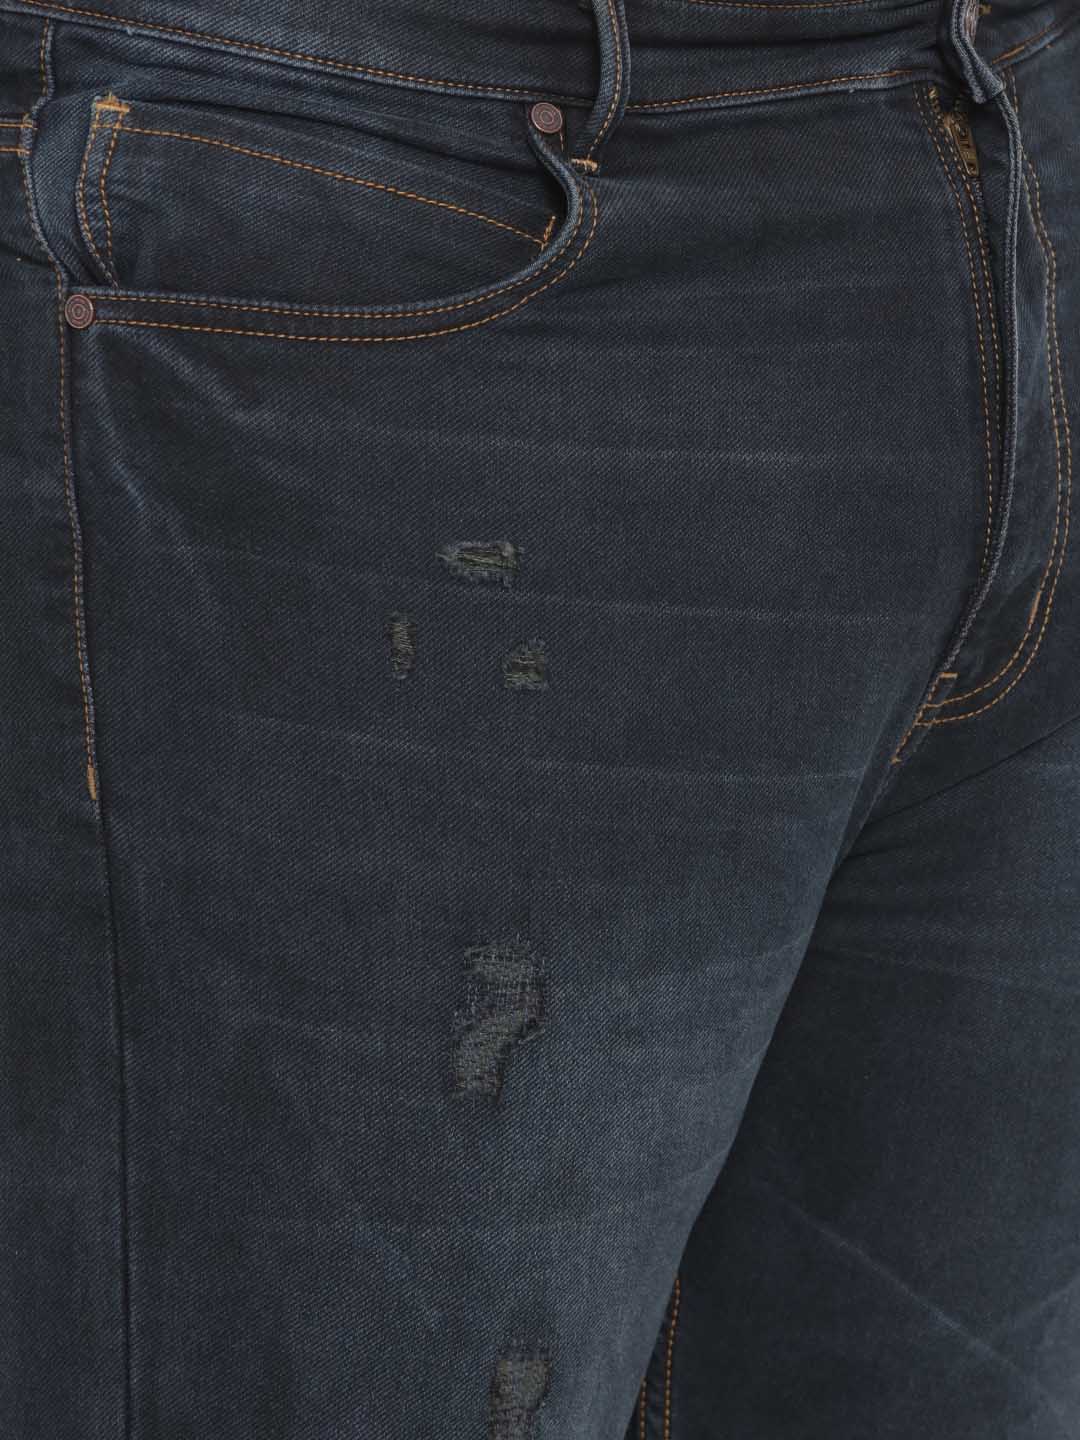 bottomwear/jeans/BEPLJPJ1225/bepljpj1225-3.jpg